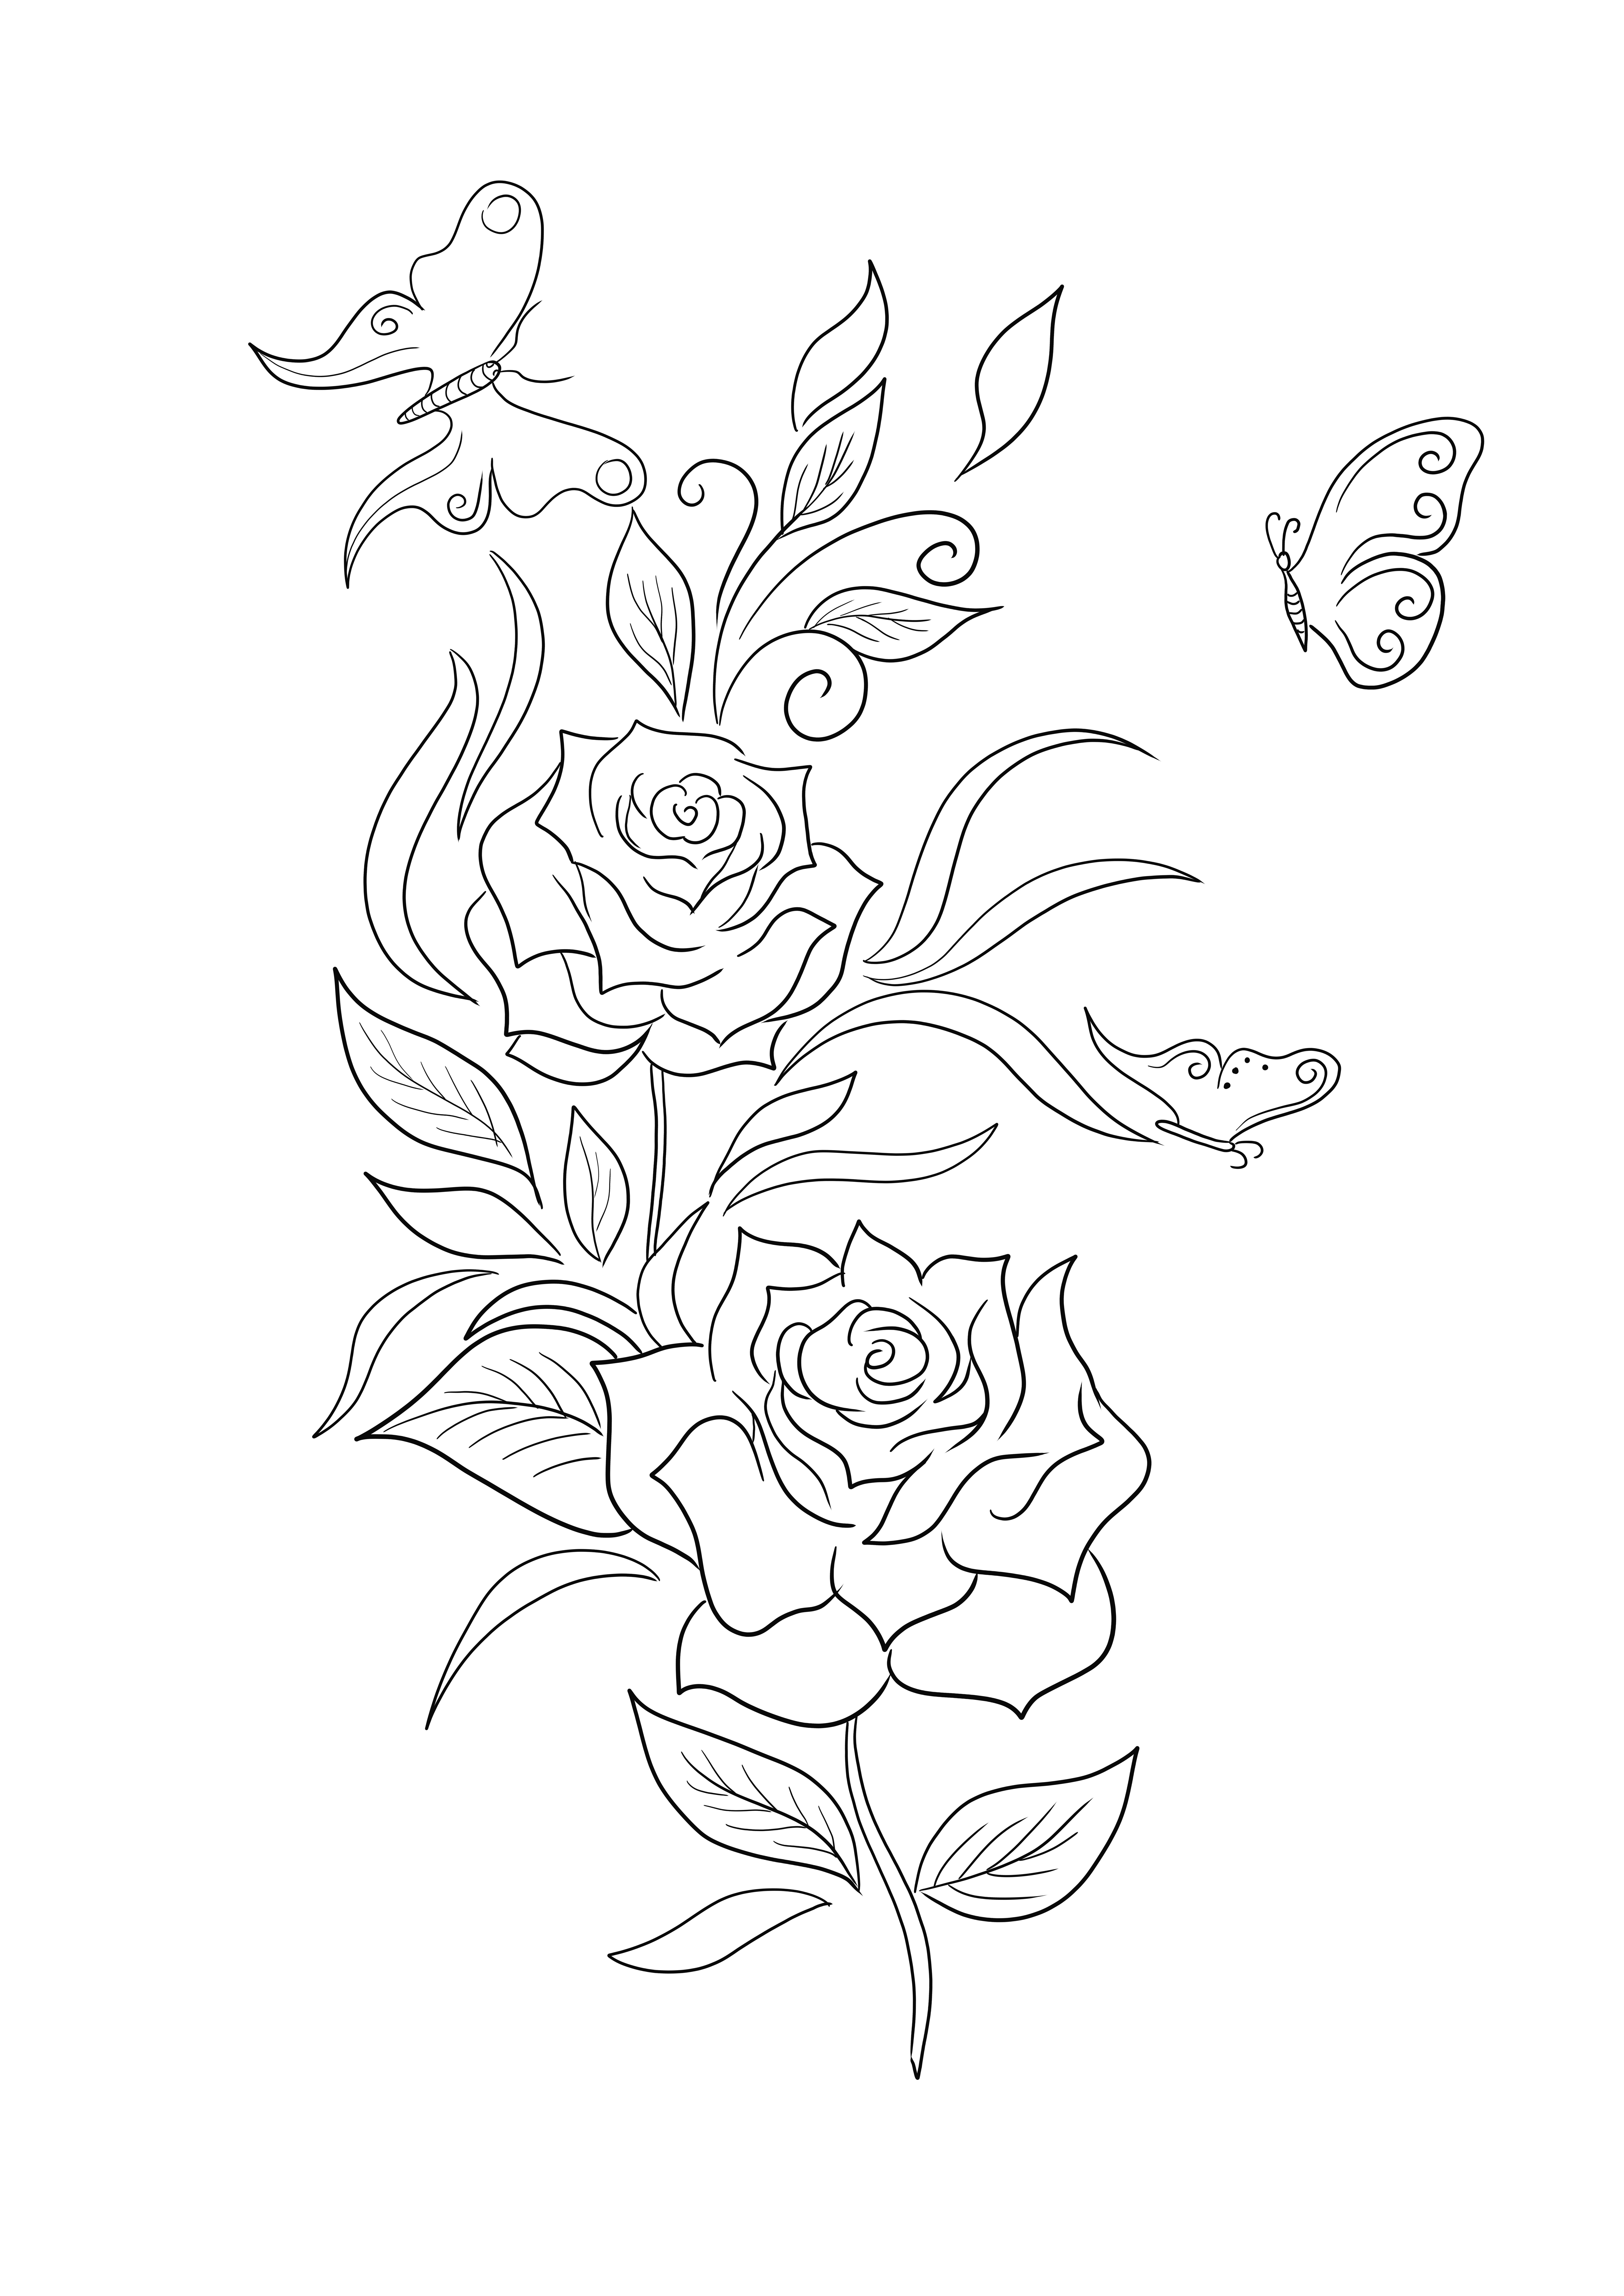 Róże i motyle do łatwego drukowania i kolorowania dla osób w każdym wieku